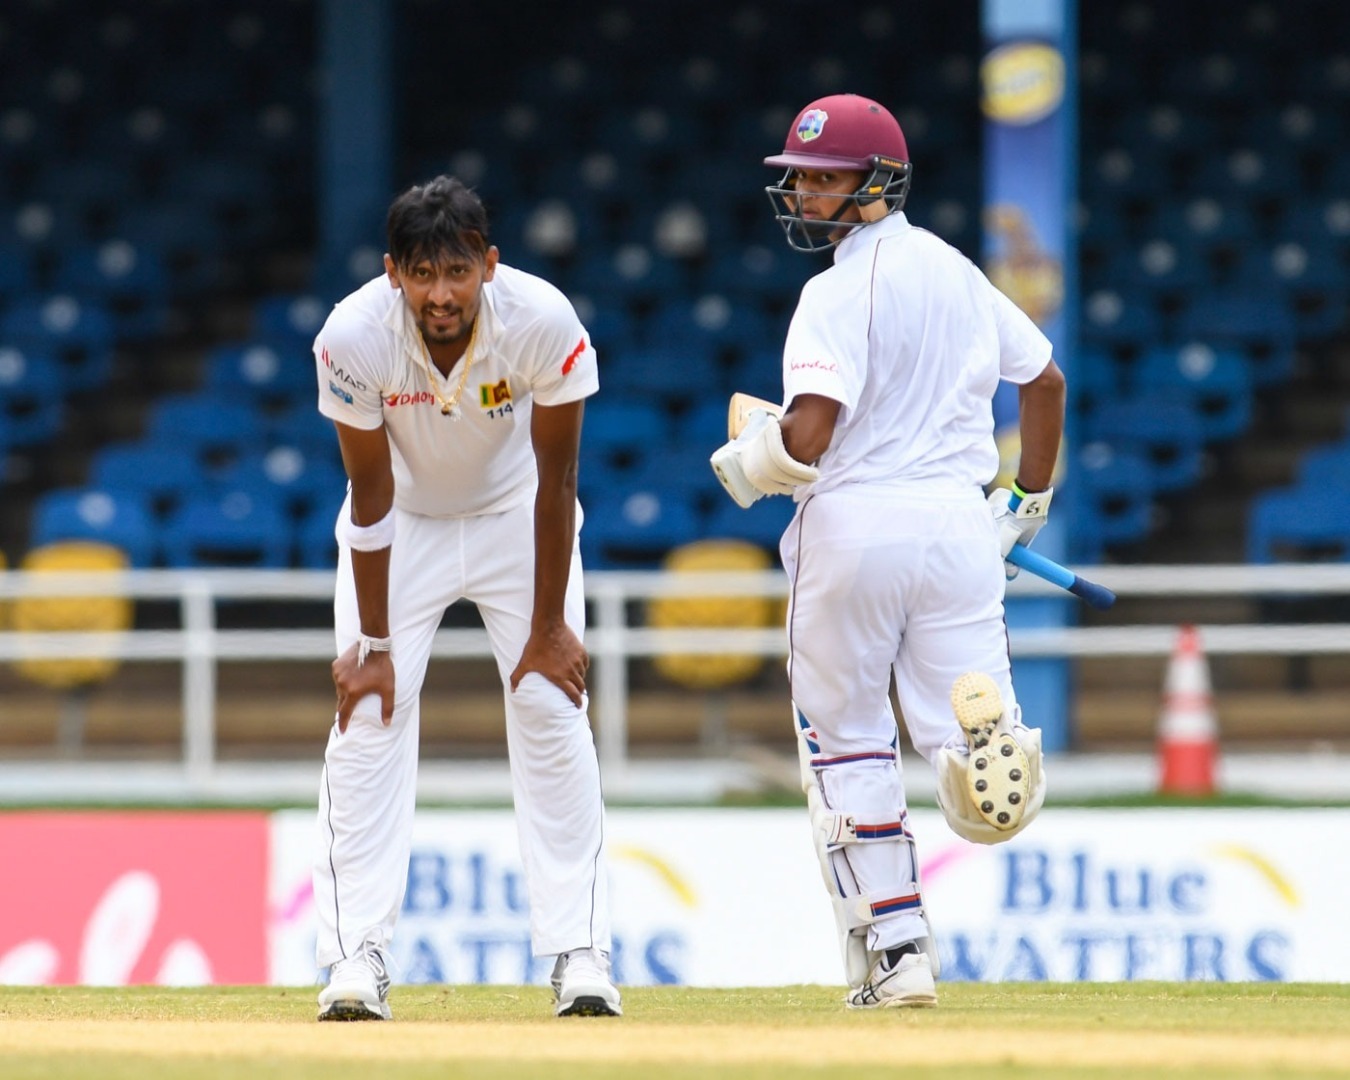 suranga lakmal to captain sri lanka in place of banned dinesh chandimal डे-नाइट टेस्ट में श्रीलंका की कप्तानी करेंगे सुरंगा लकमल